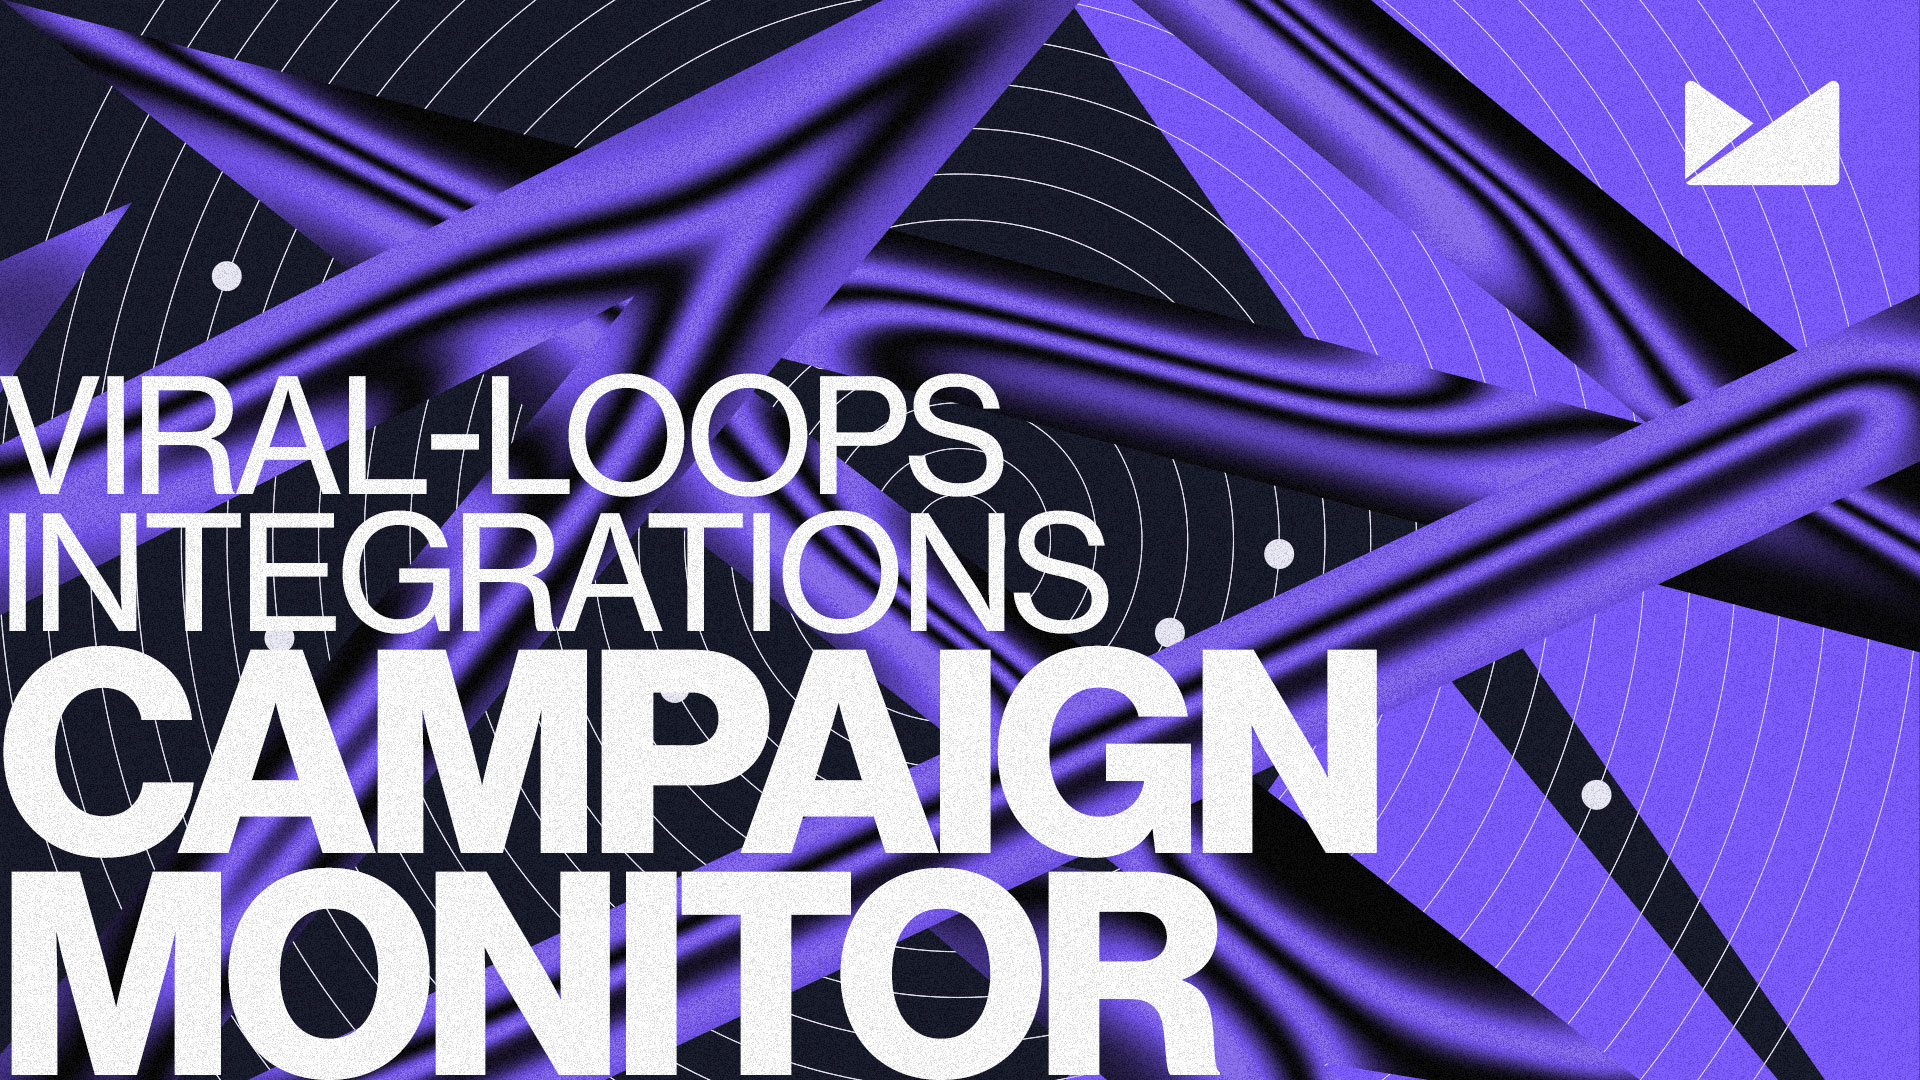 Campaign Monitor Viral Loops Integration